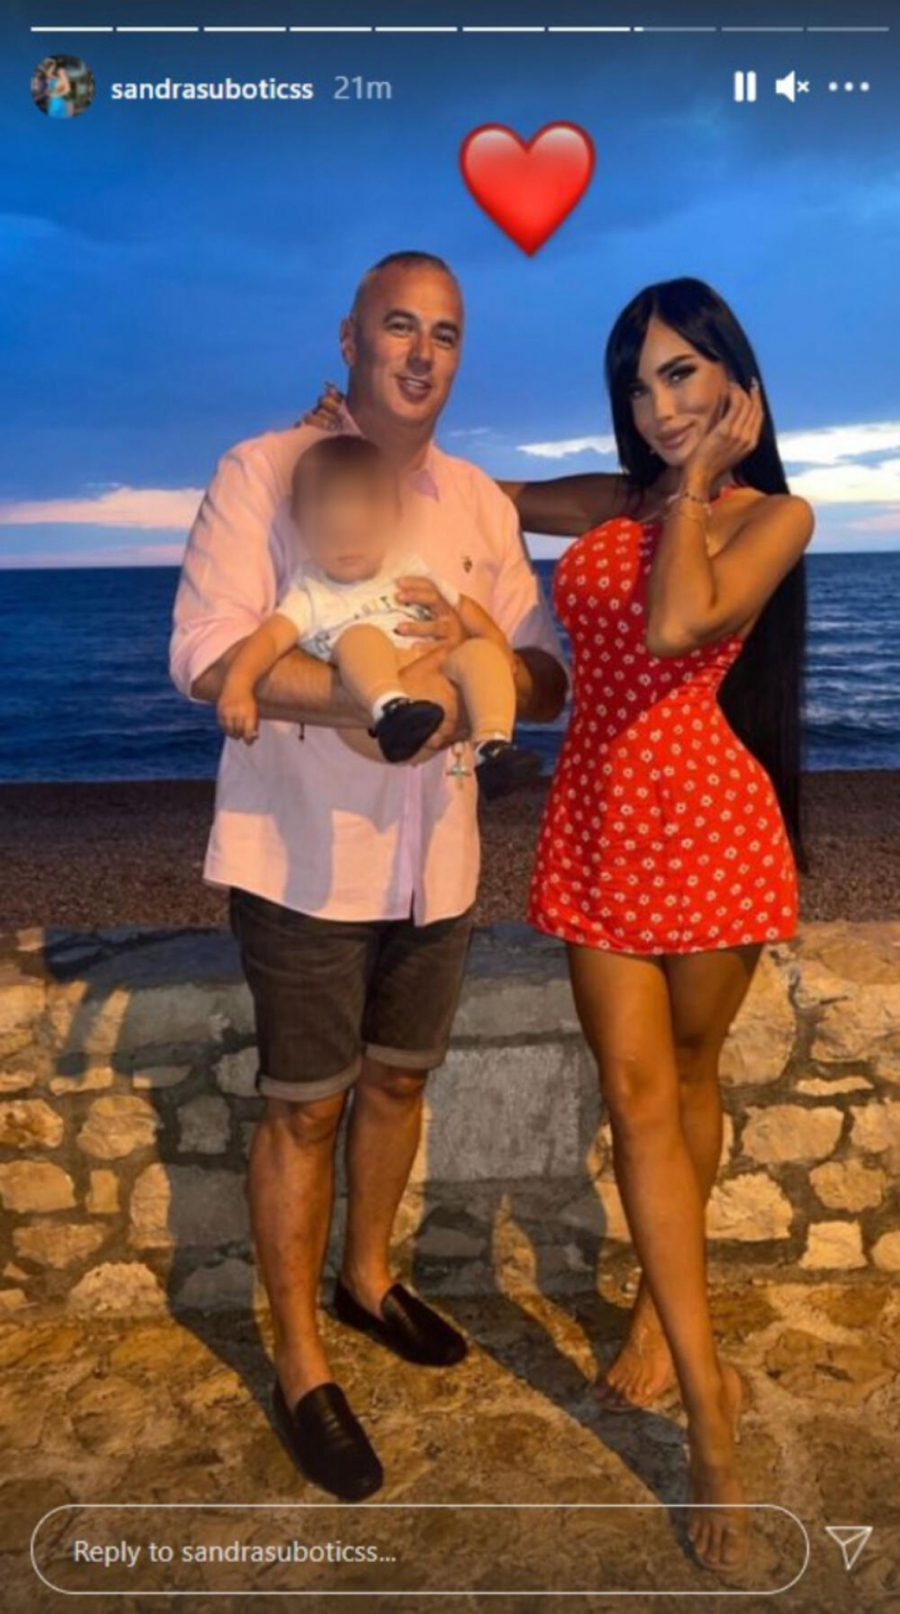 SVE PUCA OD LJUBAVI Aleksandra Subotić pokazala kako uživa na moru uz sina i supruga, svi pričaju o njenim nogama u crvenoj haljini (FOTO)